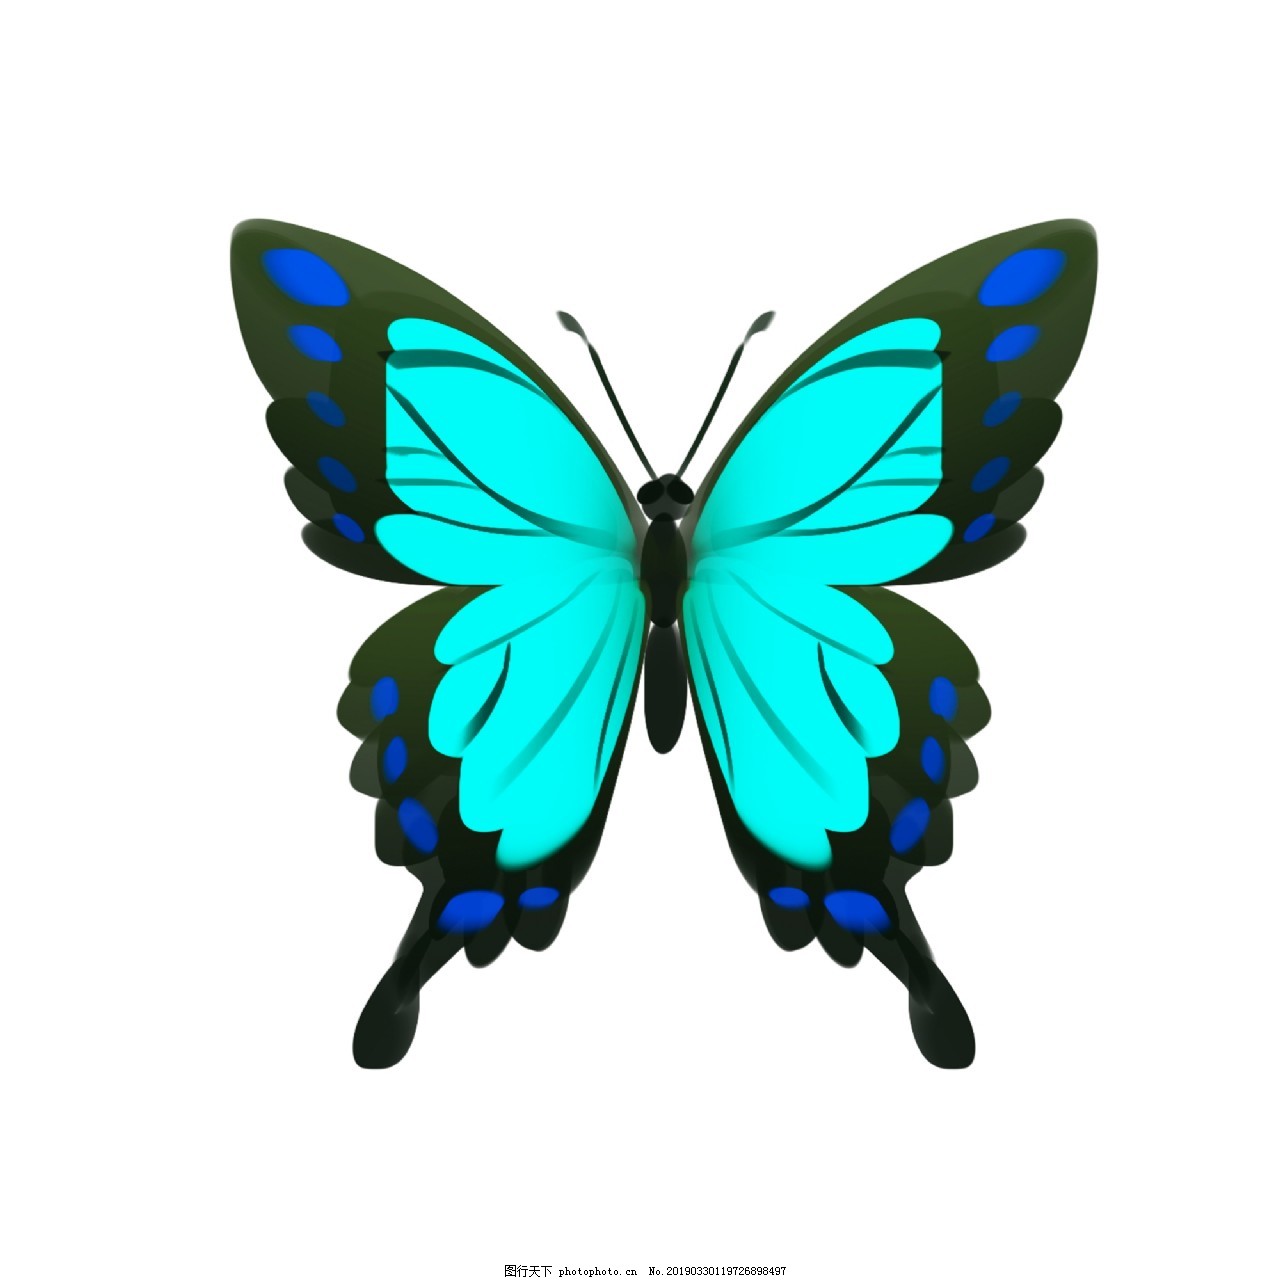 1000 多张免费的“蓝色蝴蝶”和“蝴蝶”照片 - Pixabay